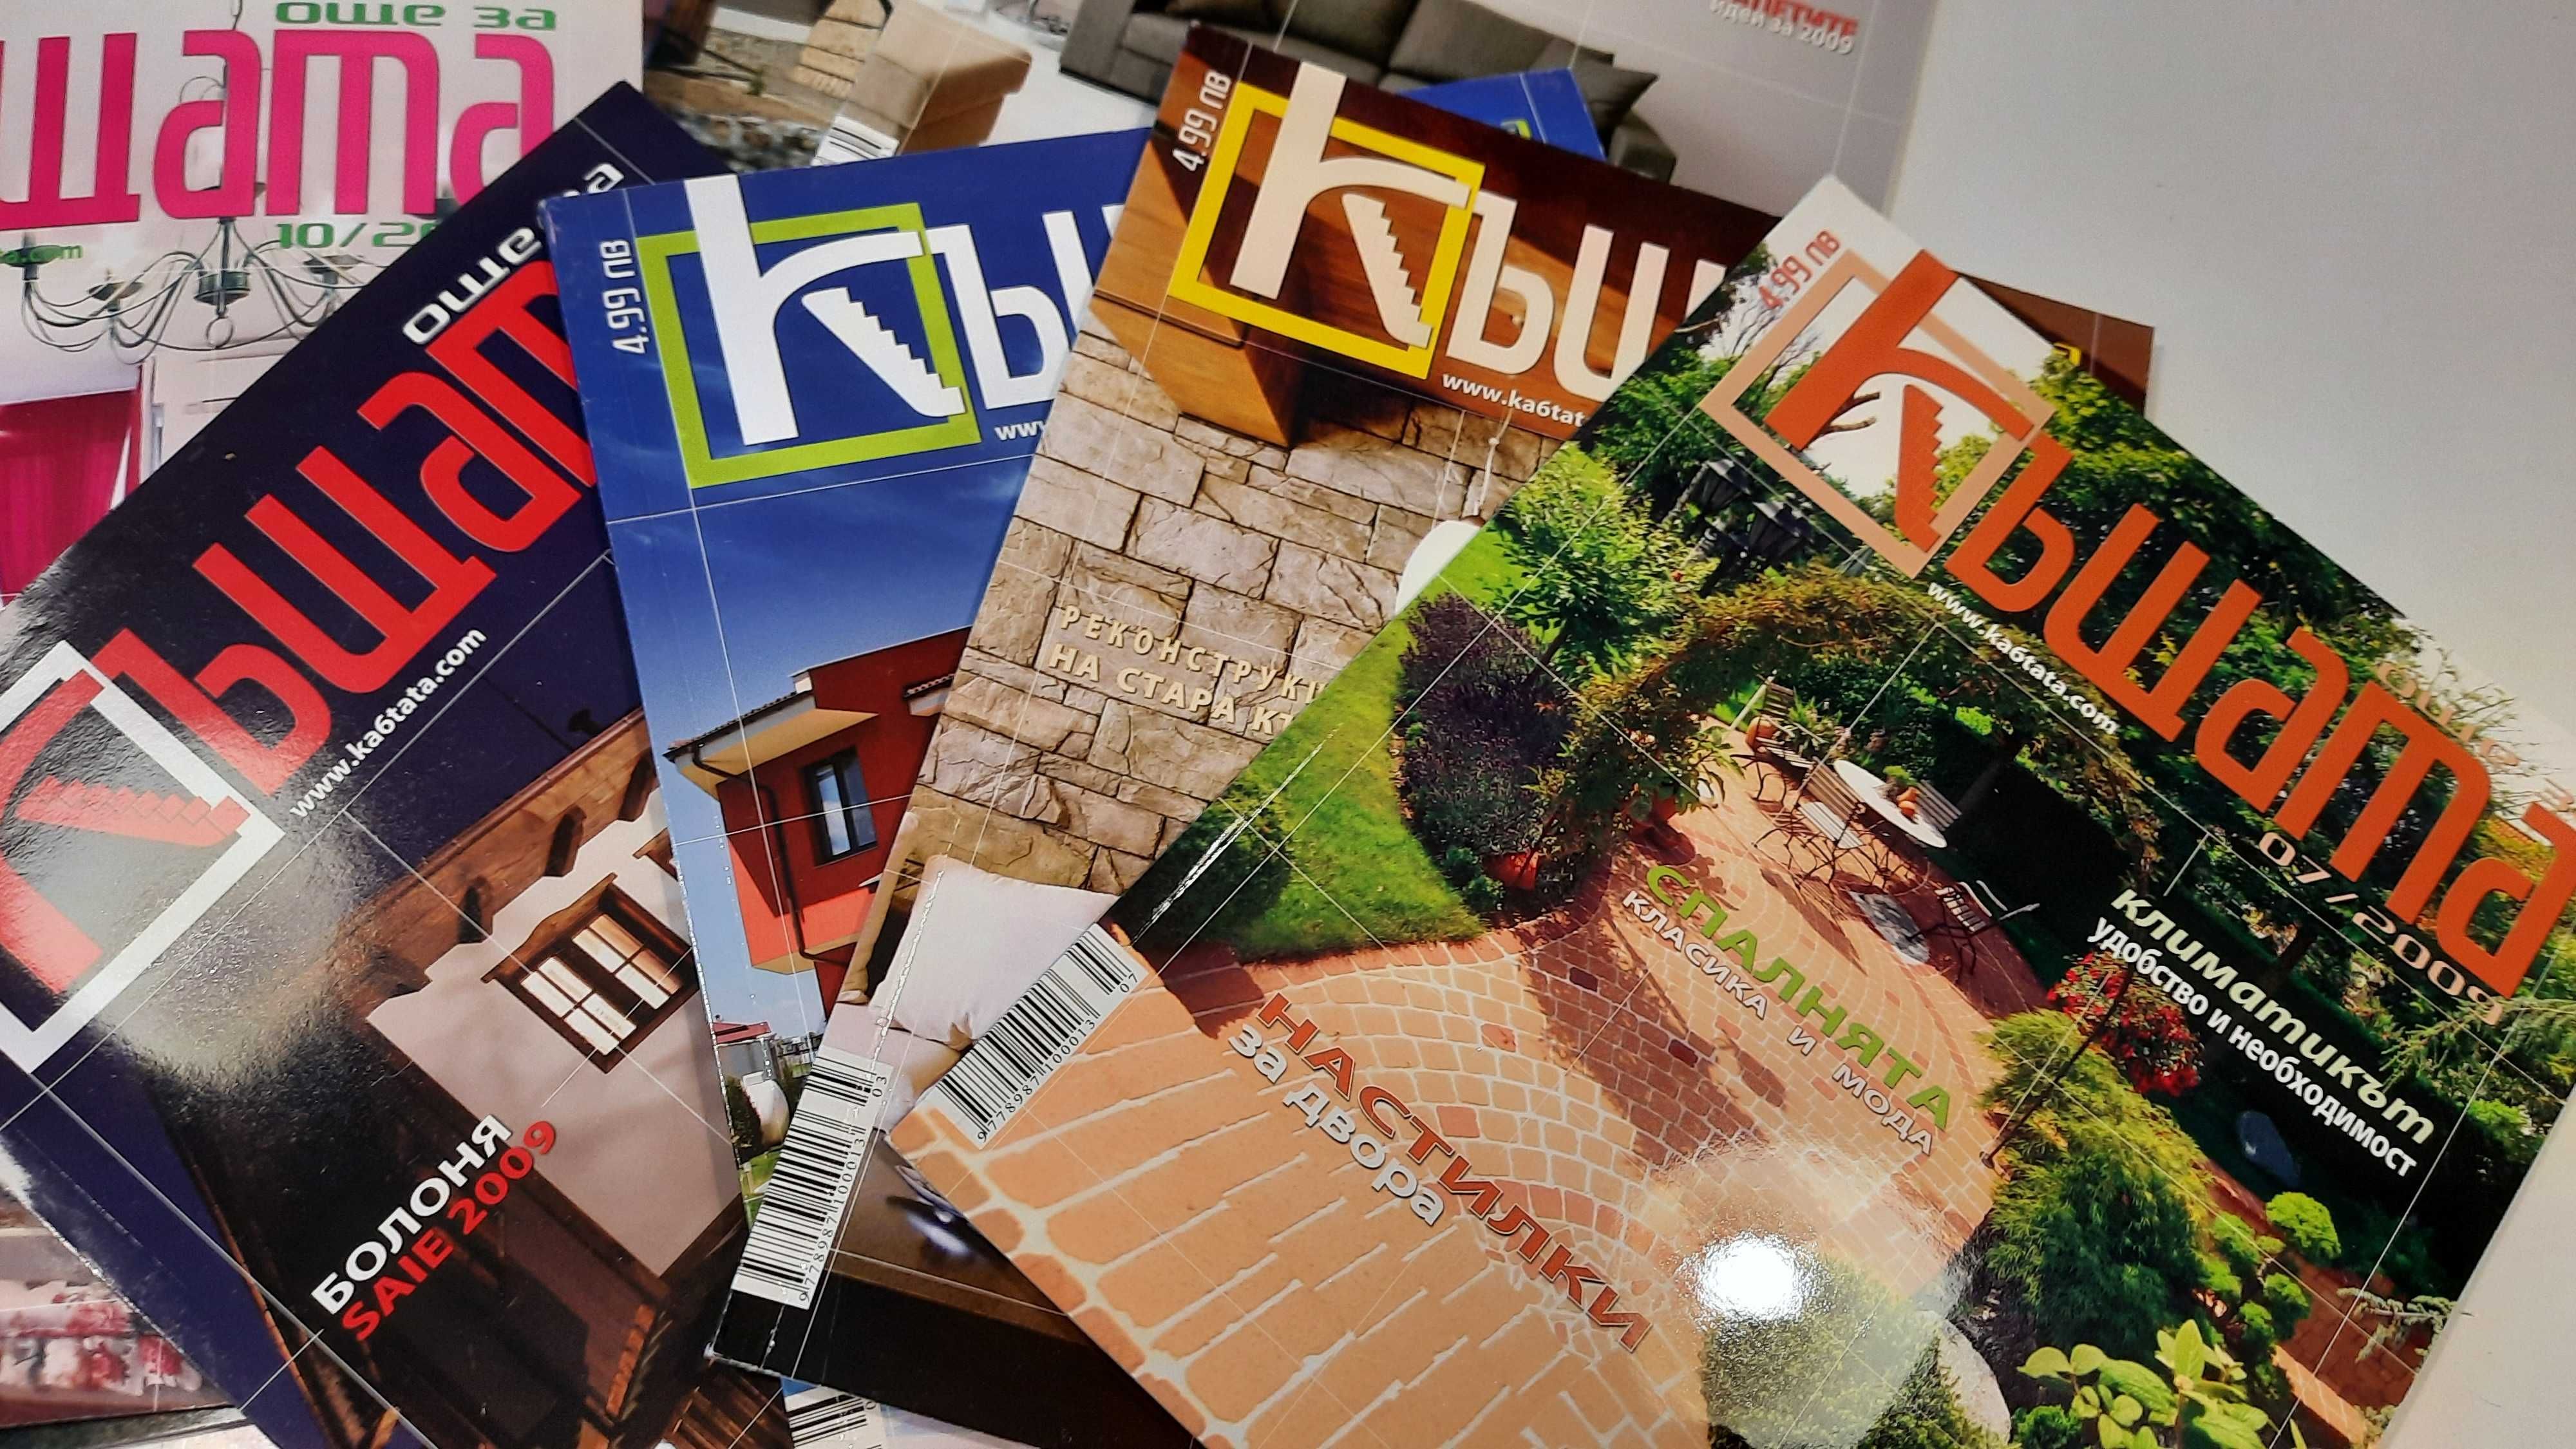 Списания Къщата, 13 броя